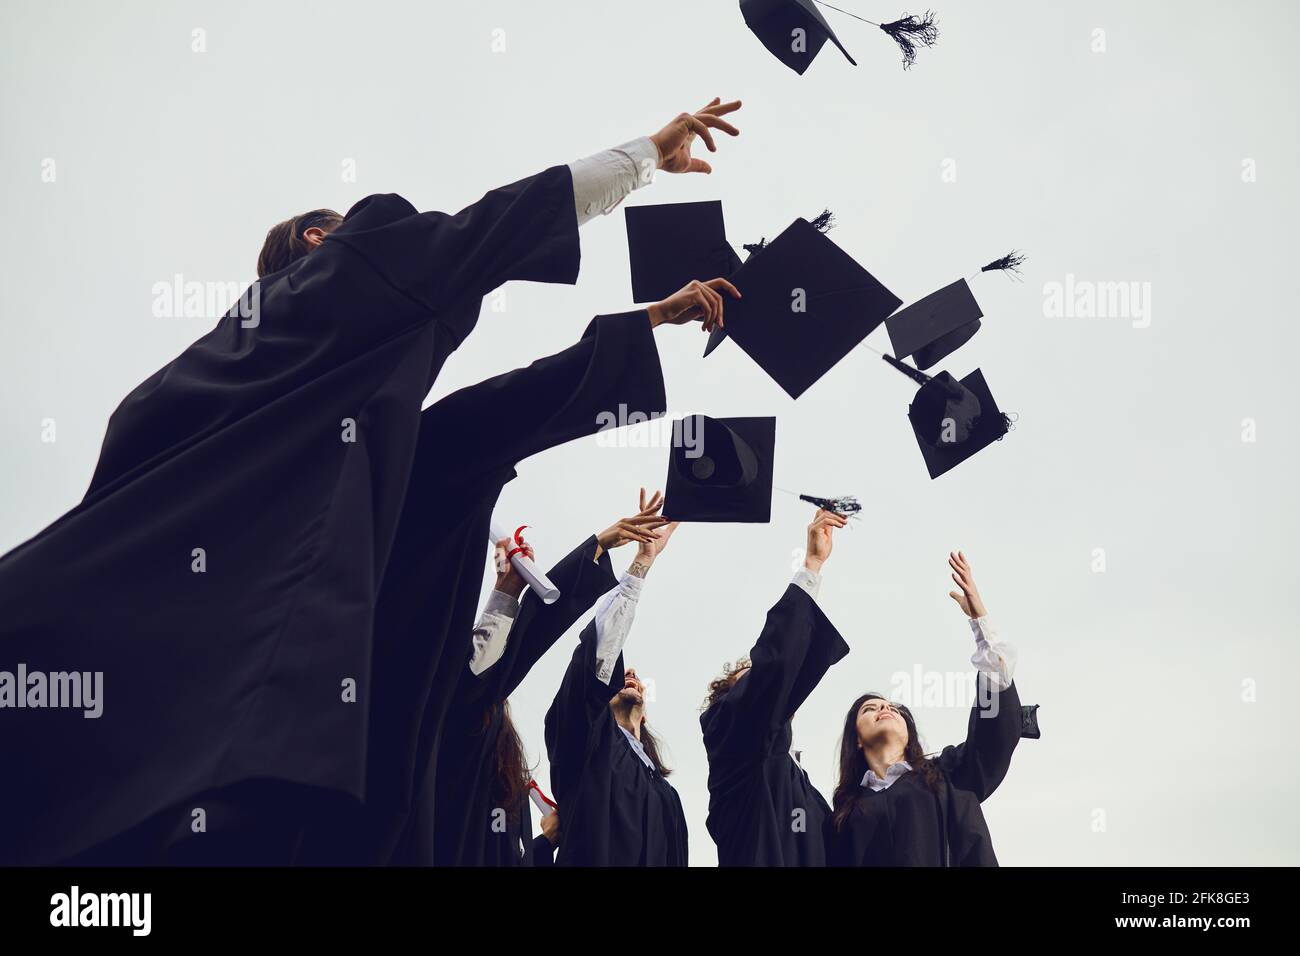 Absolventen werfen ihre akademischen Hüte während einer feierlichen Zeremonie an der Universität in den Himmel. Stockfoto